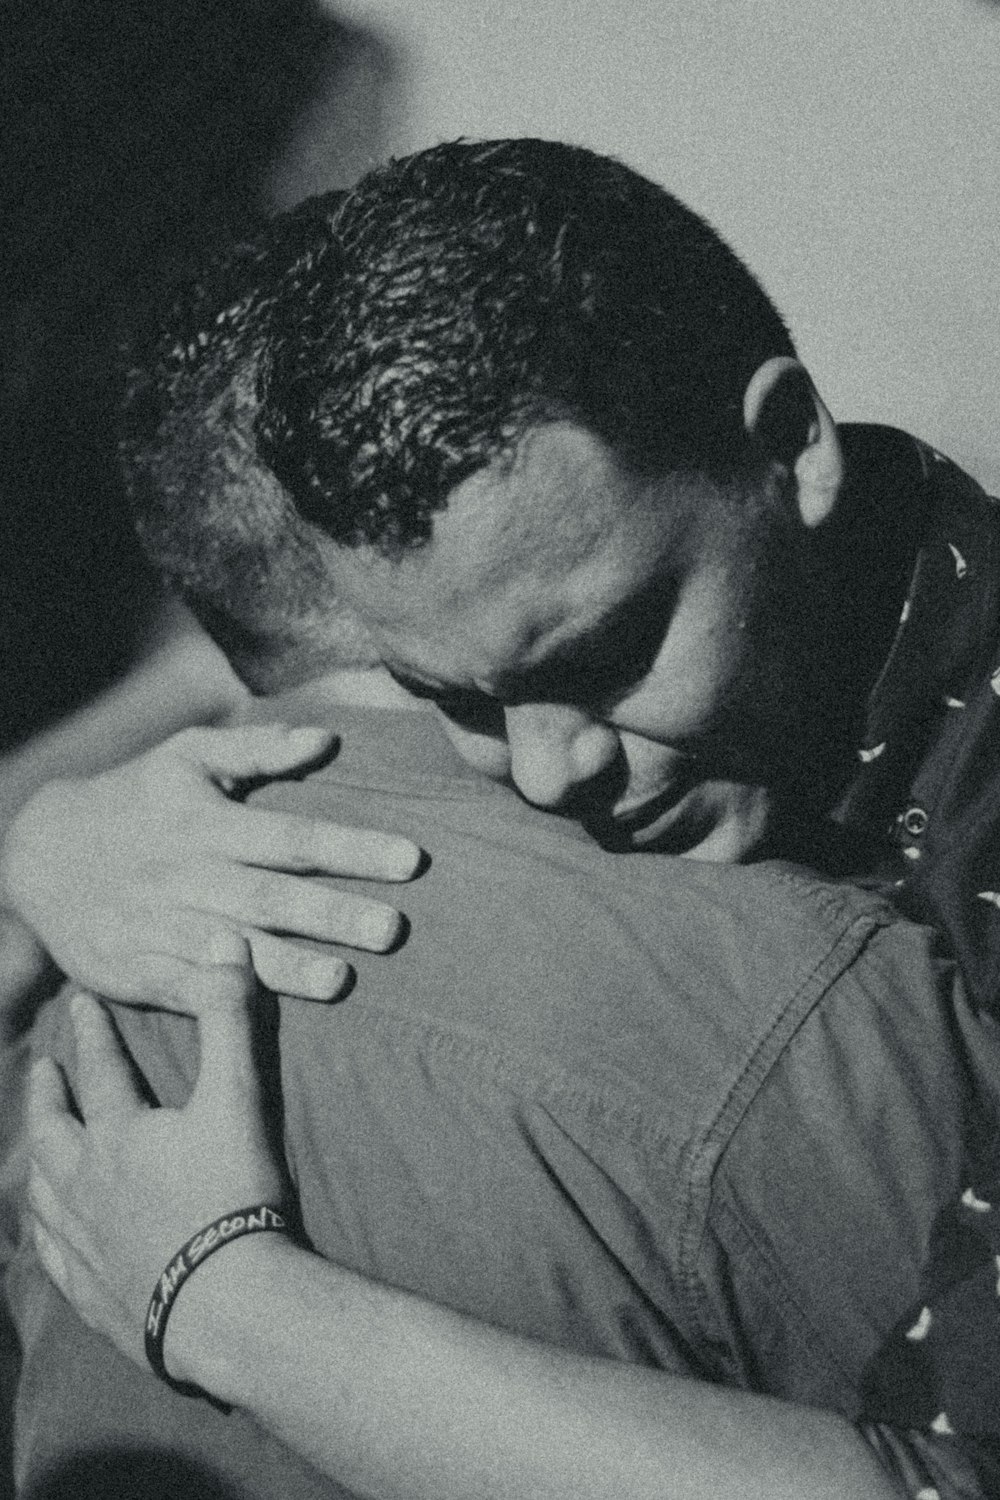 fotografia in scala di grigi di due uomini che si abbracciano